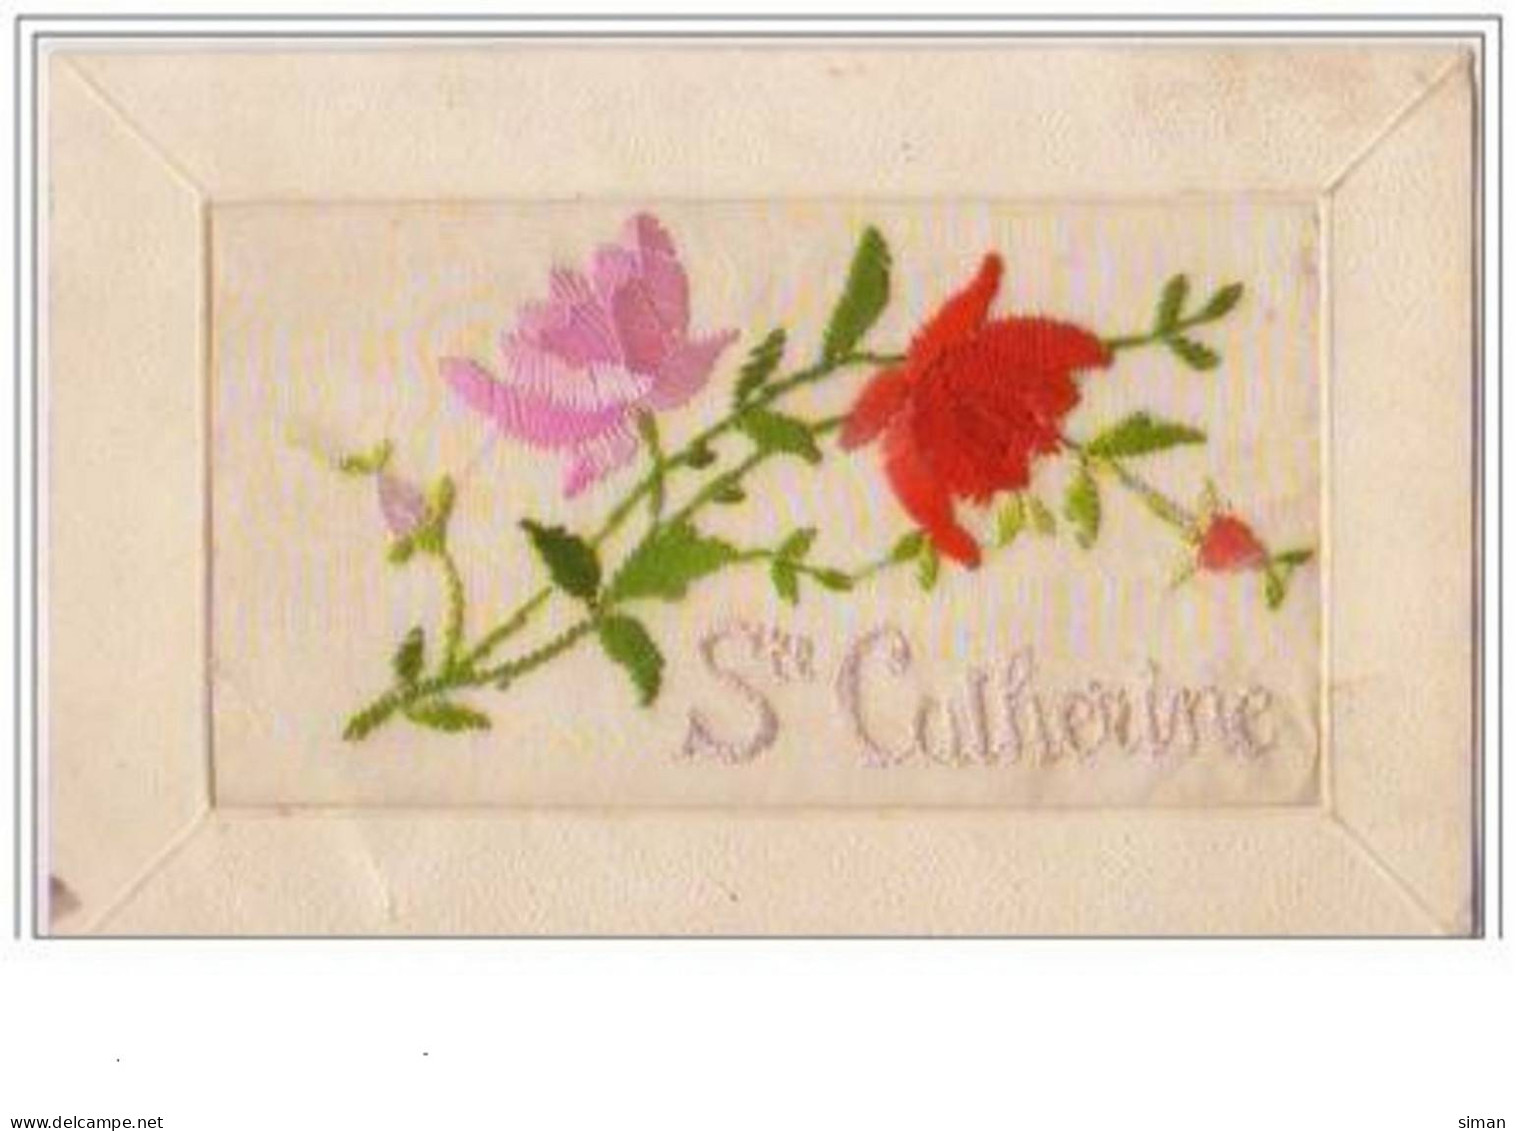 N°2556 - Carte Brodée - Sainte Catherine - Roses - Bordados